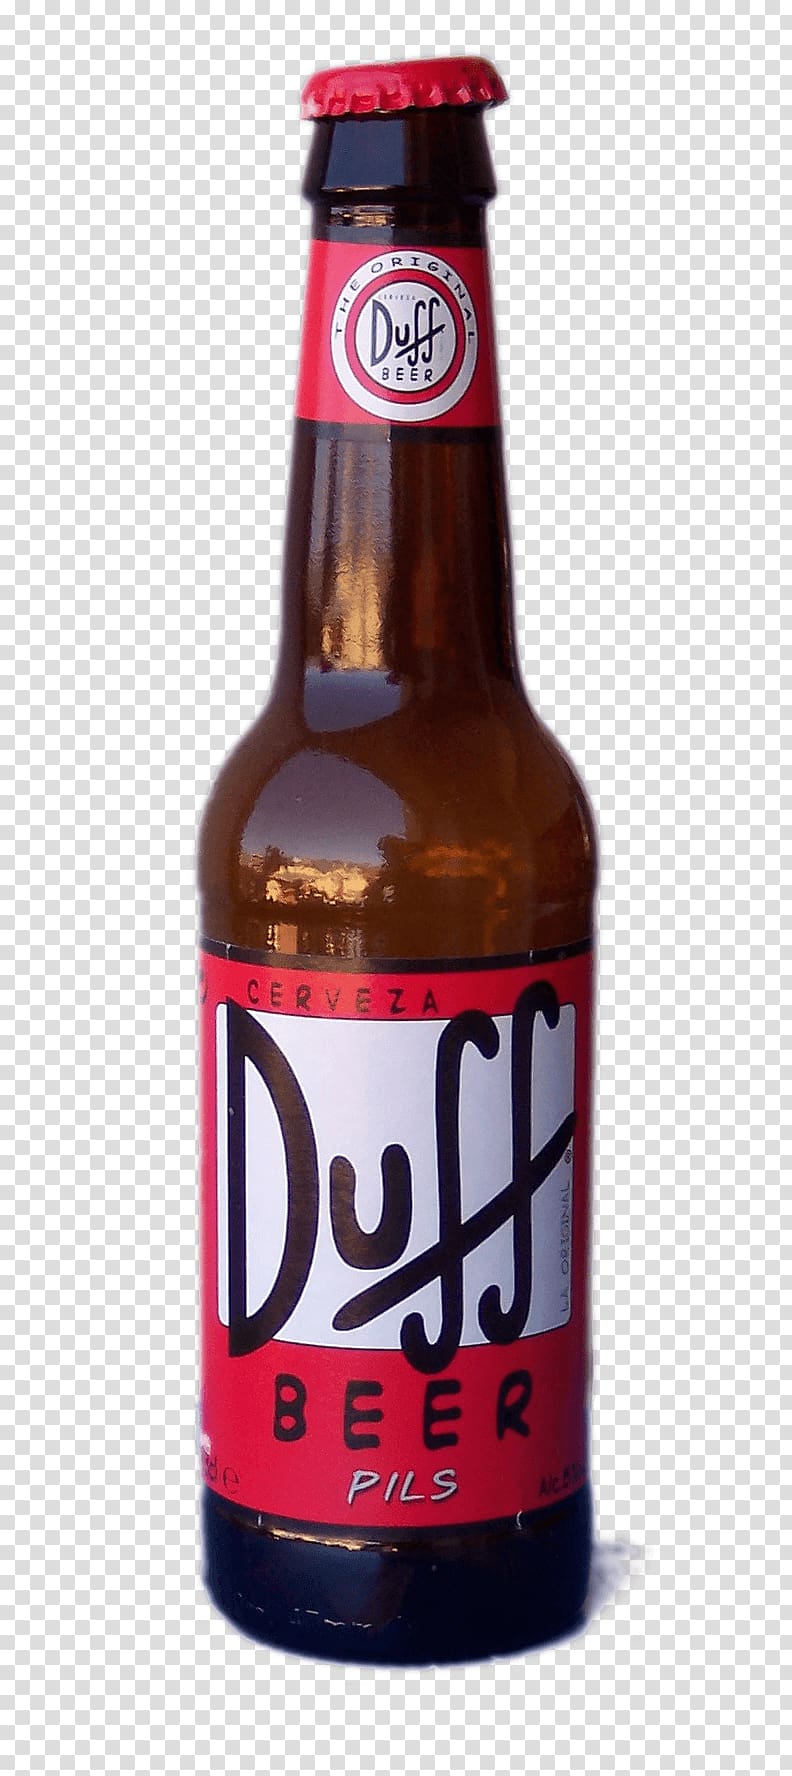 Duff Beer Budweiser Beer bottle, Bottle Of Bottle transparent background PNG clipart